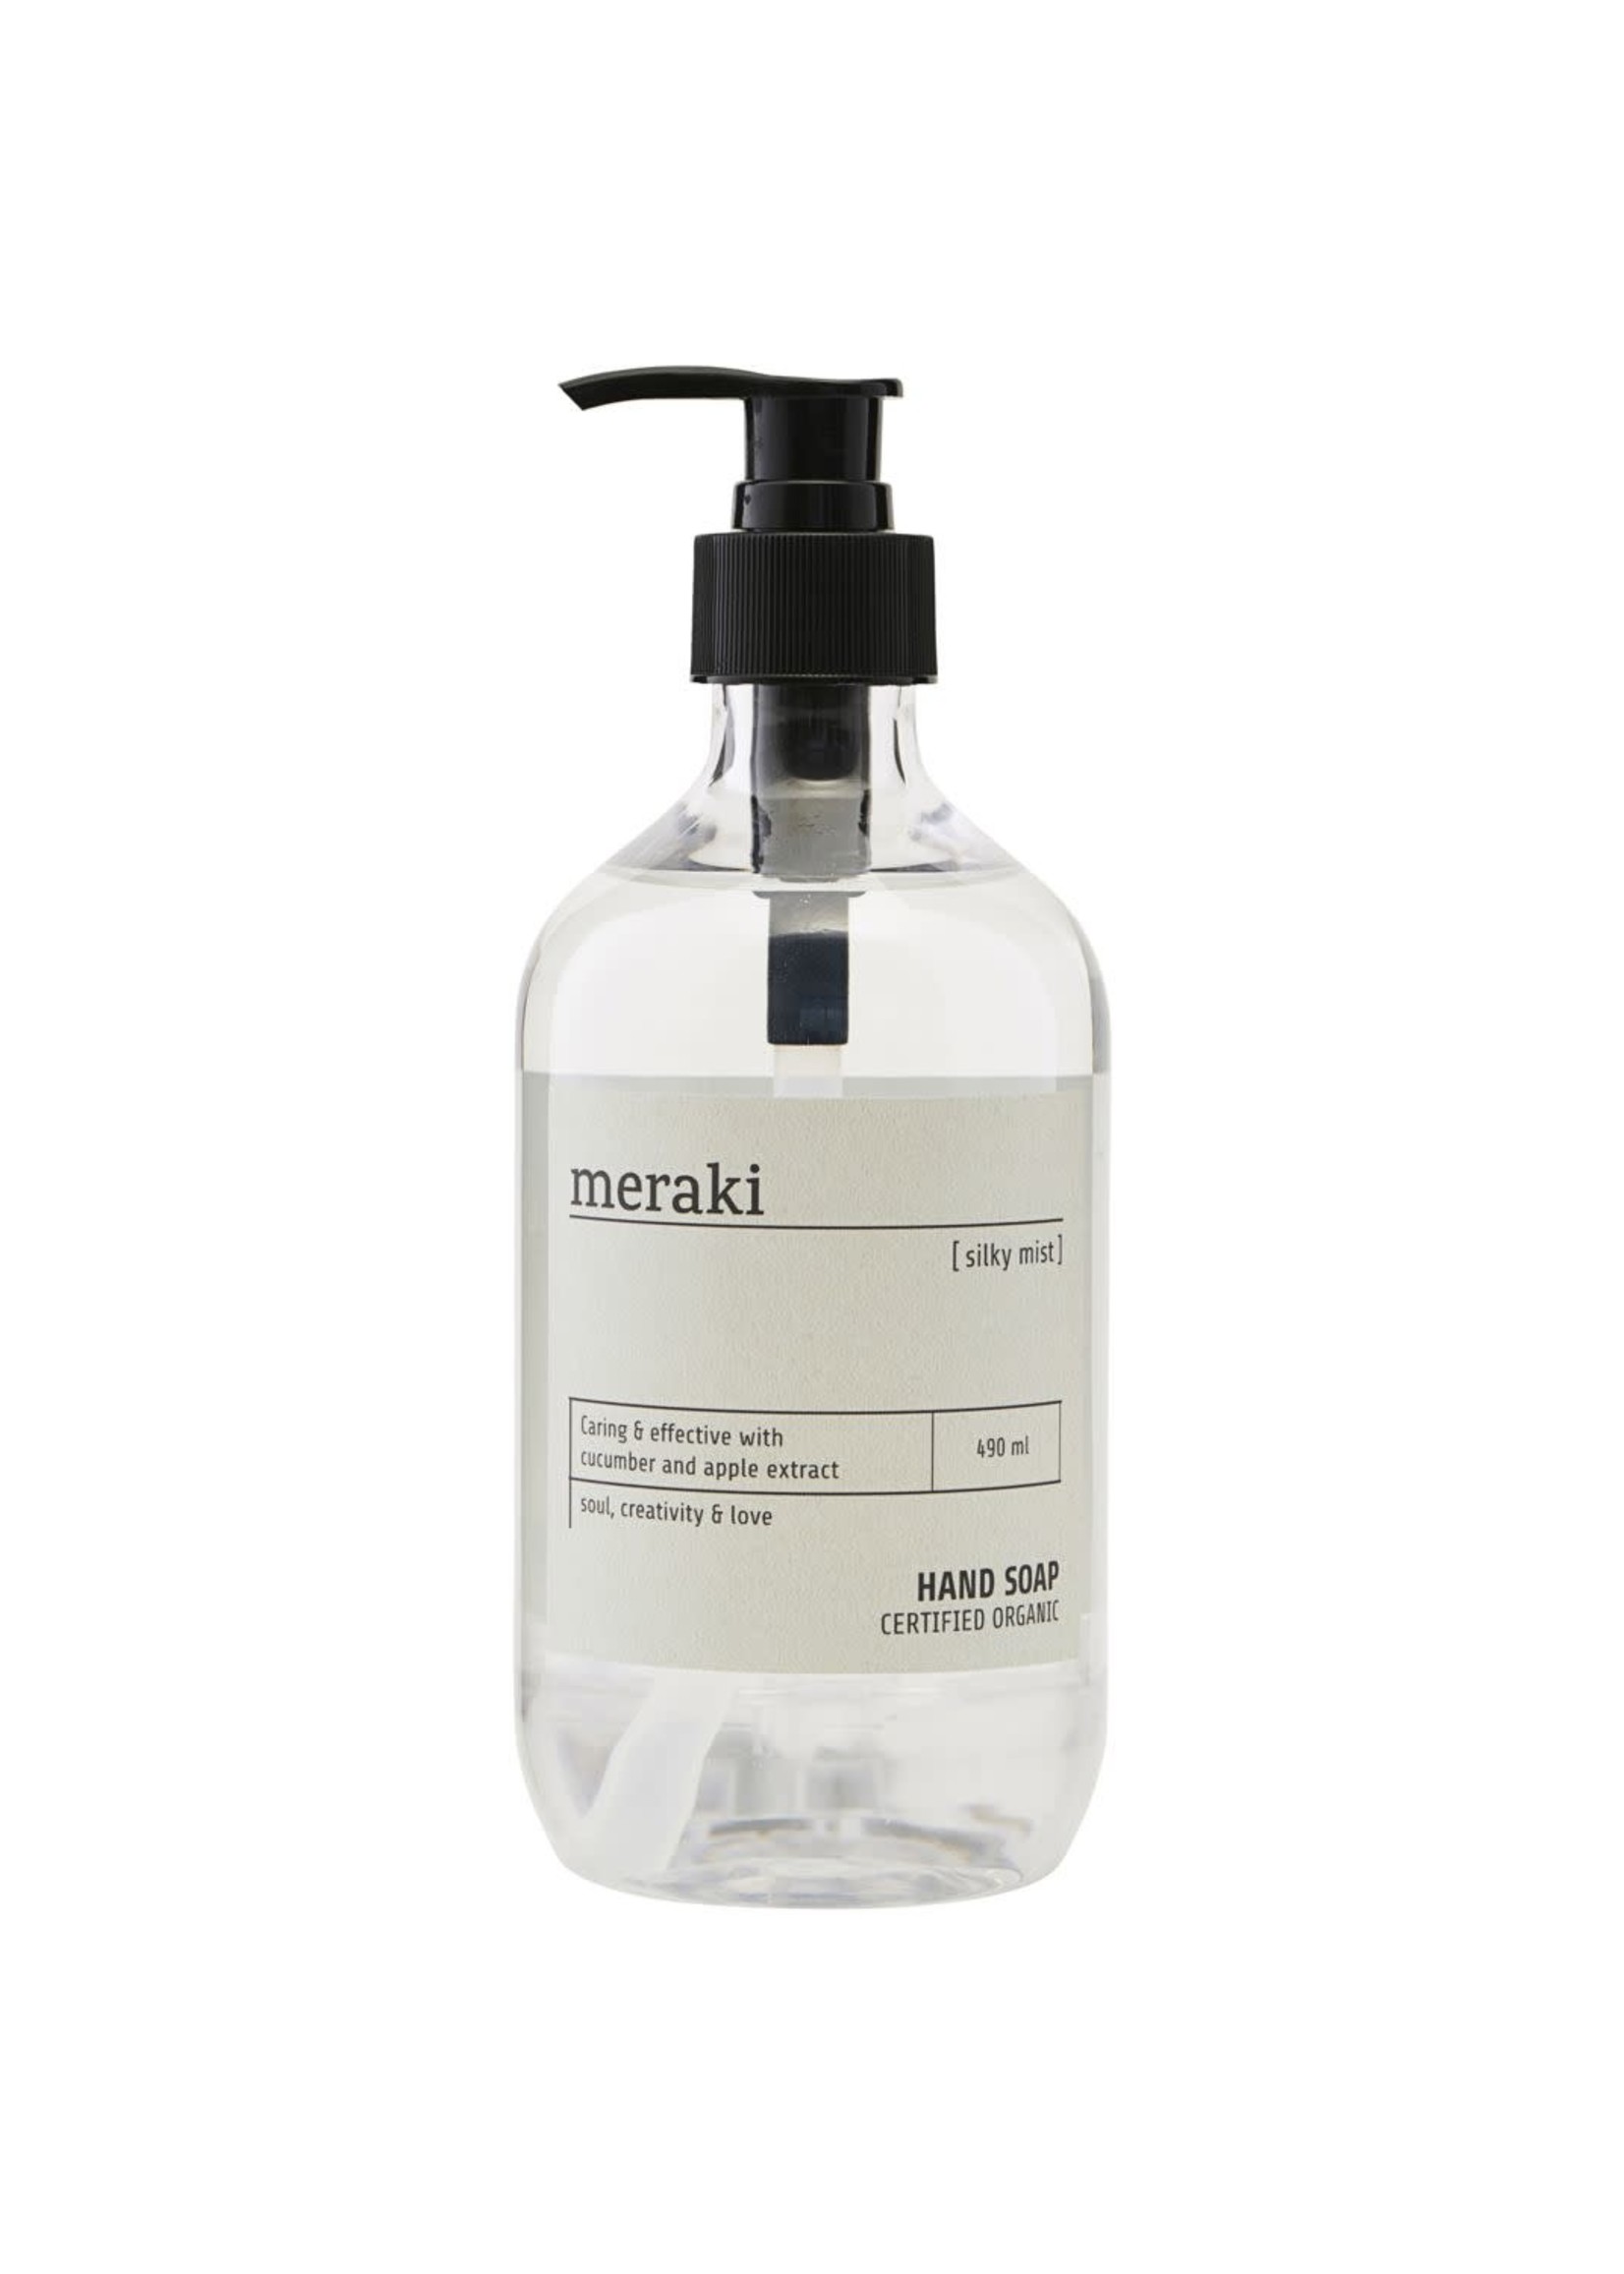 Meraki Society of Lifestyle Hand Soap - Silky Mist - 16.5 fl.oz (490 ml.)